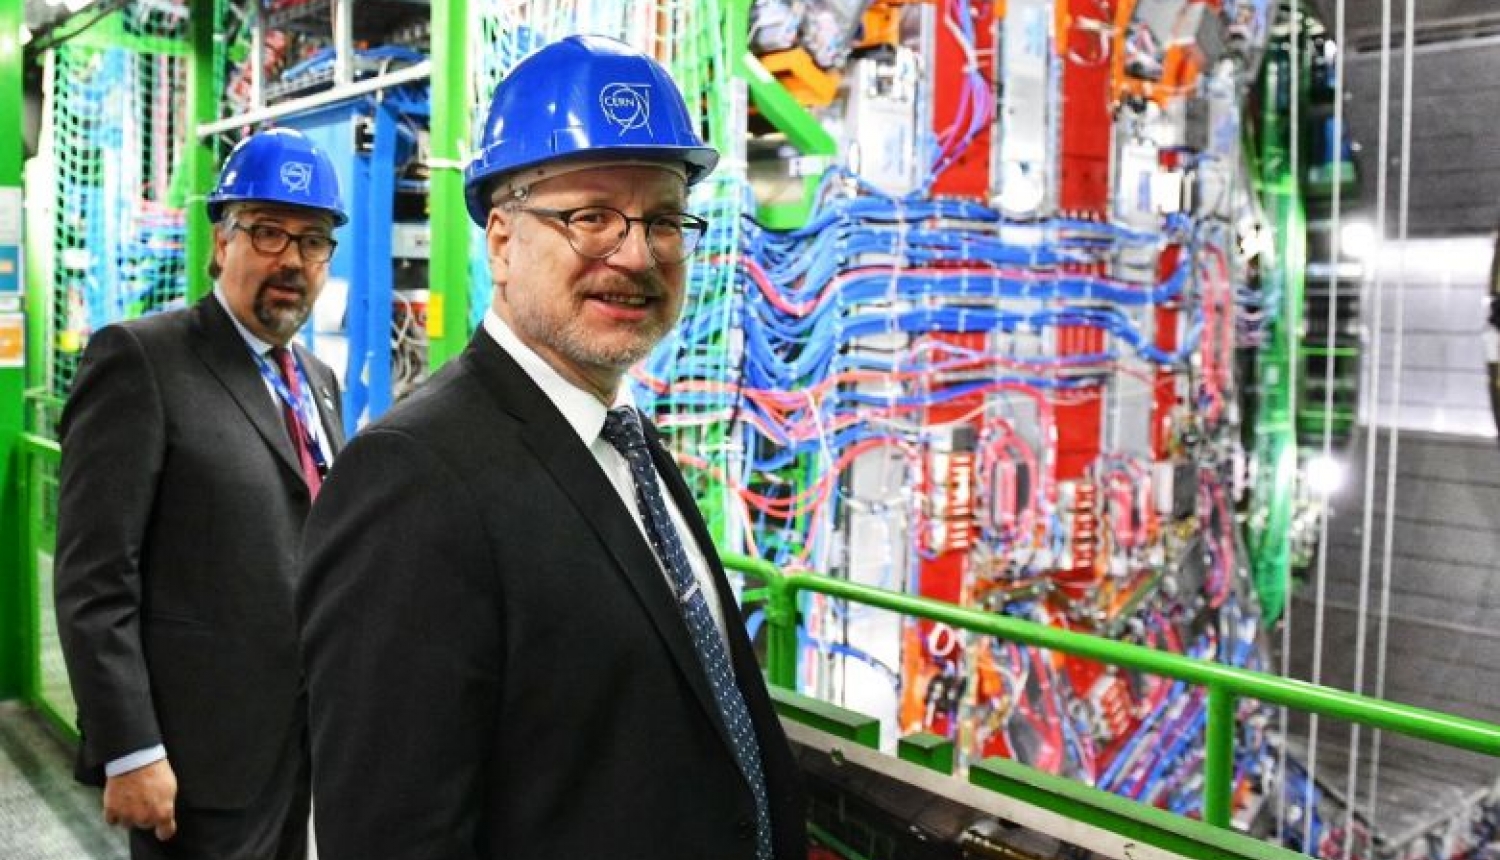 Valsts prezidents: Latvijas iestāšanās CERN veido fizikas zinātņu izcilības kopienu arī mūsu valstī